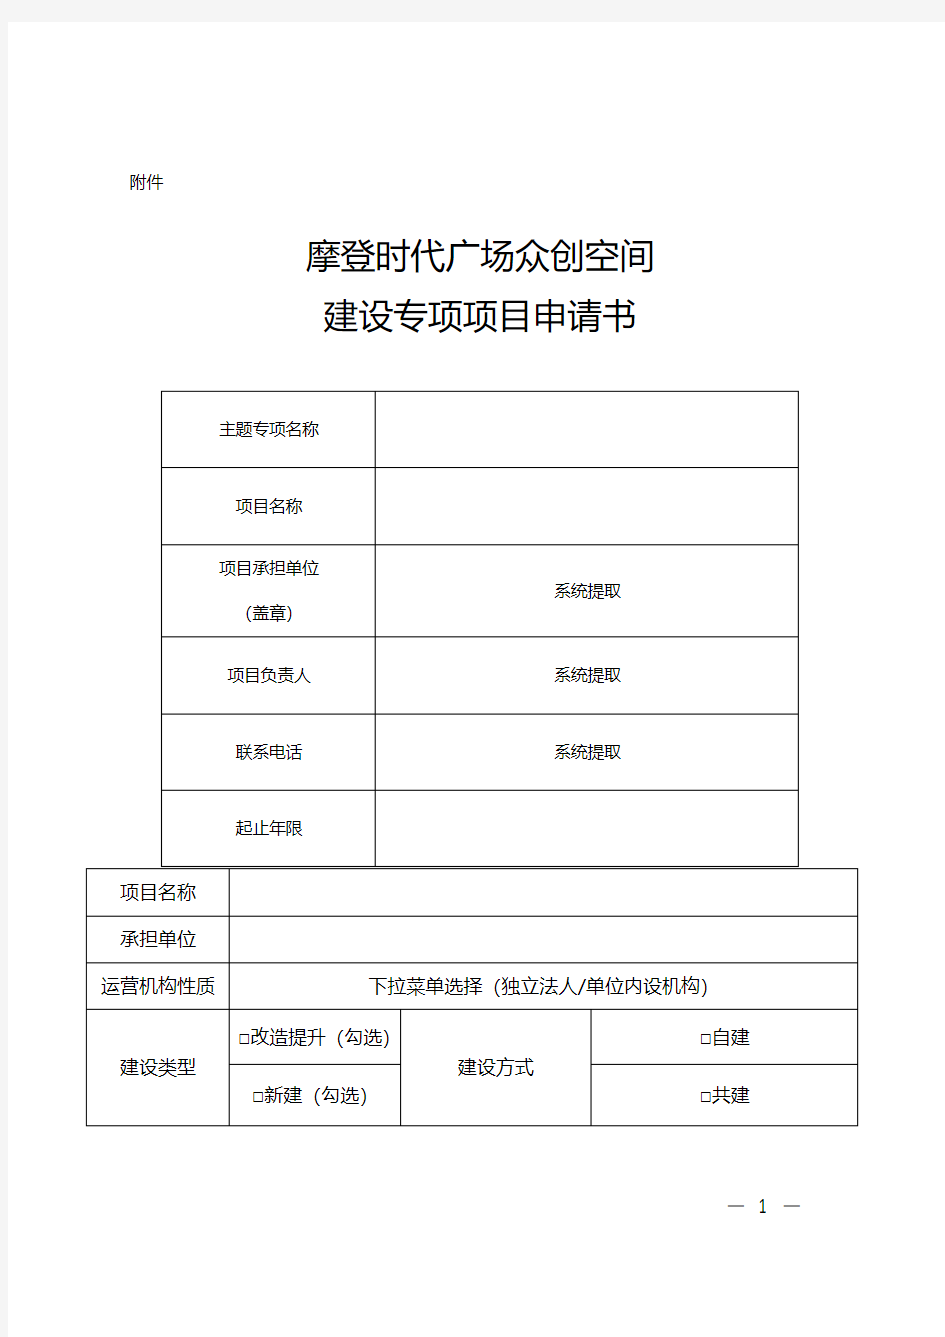 重庆市众创空间(科技企业孵化器)建设专项项目申请书【附件】